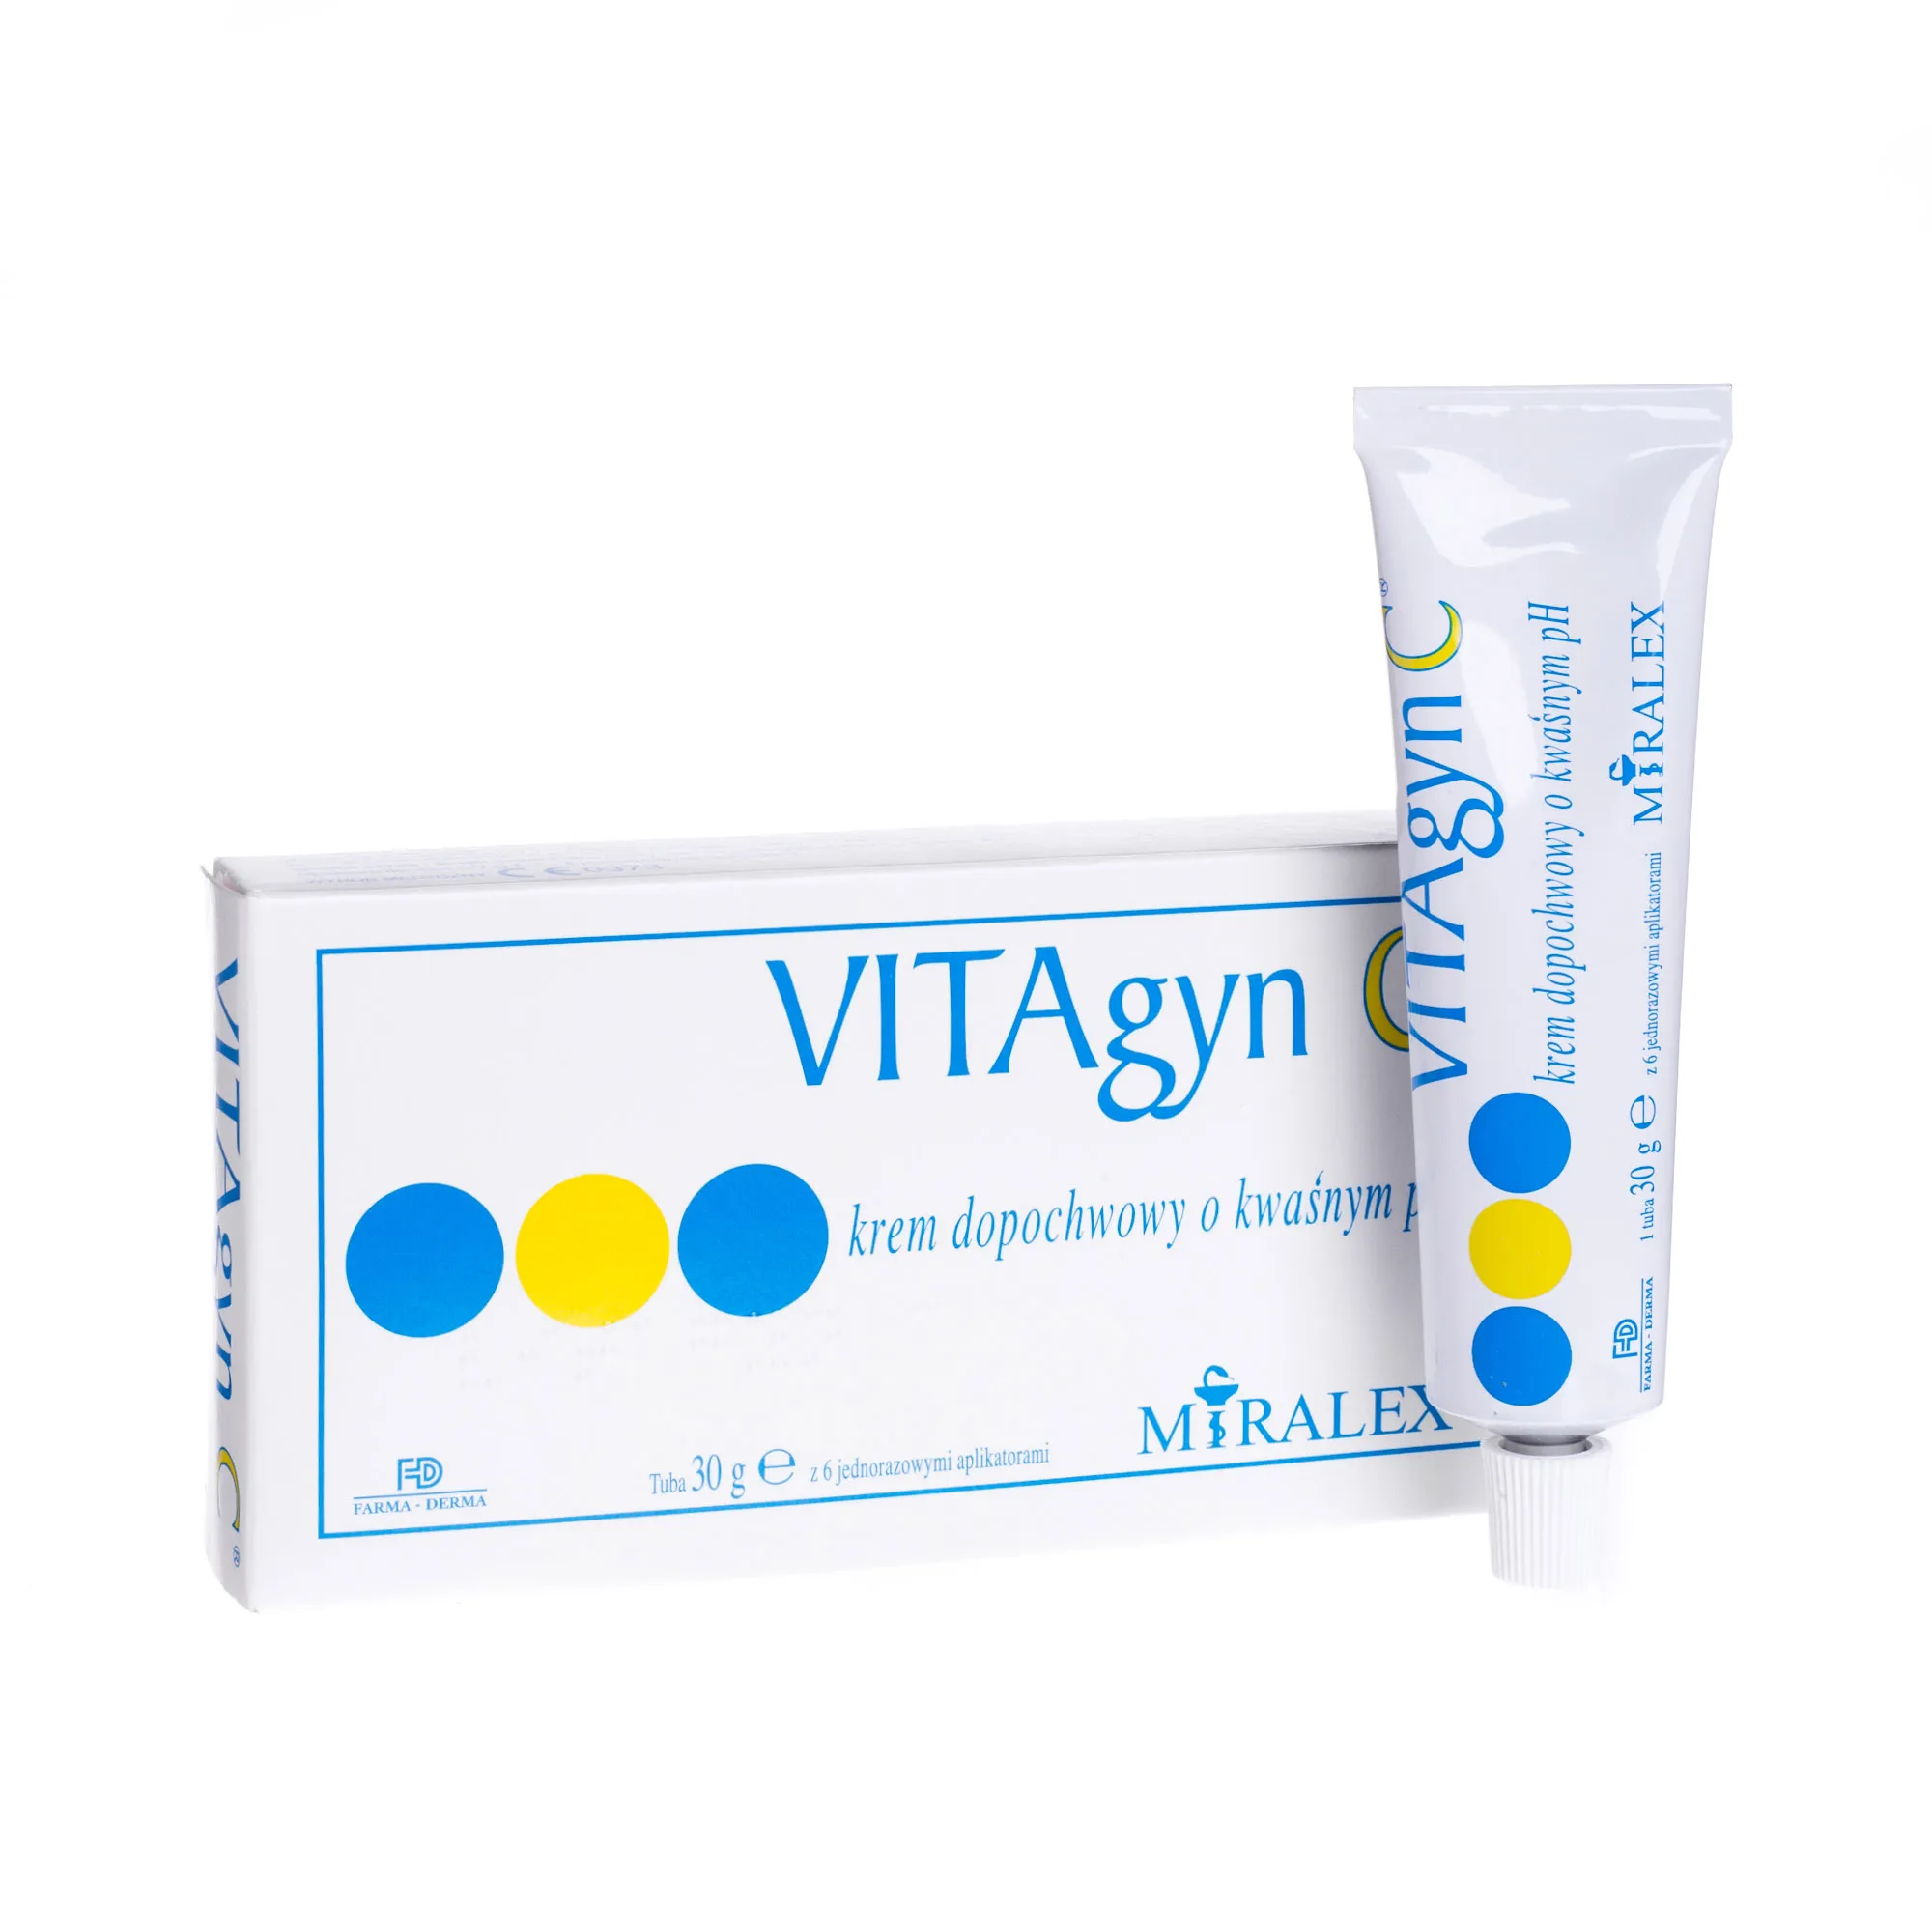 VITAgyn C, krem dopochwowy o kwaśnym pH, 30g 